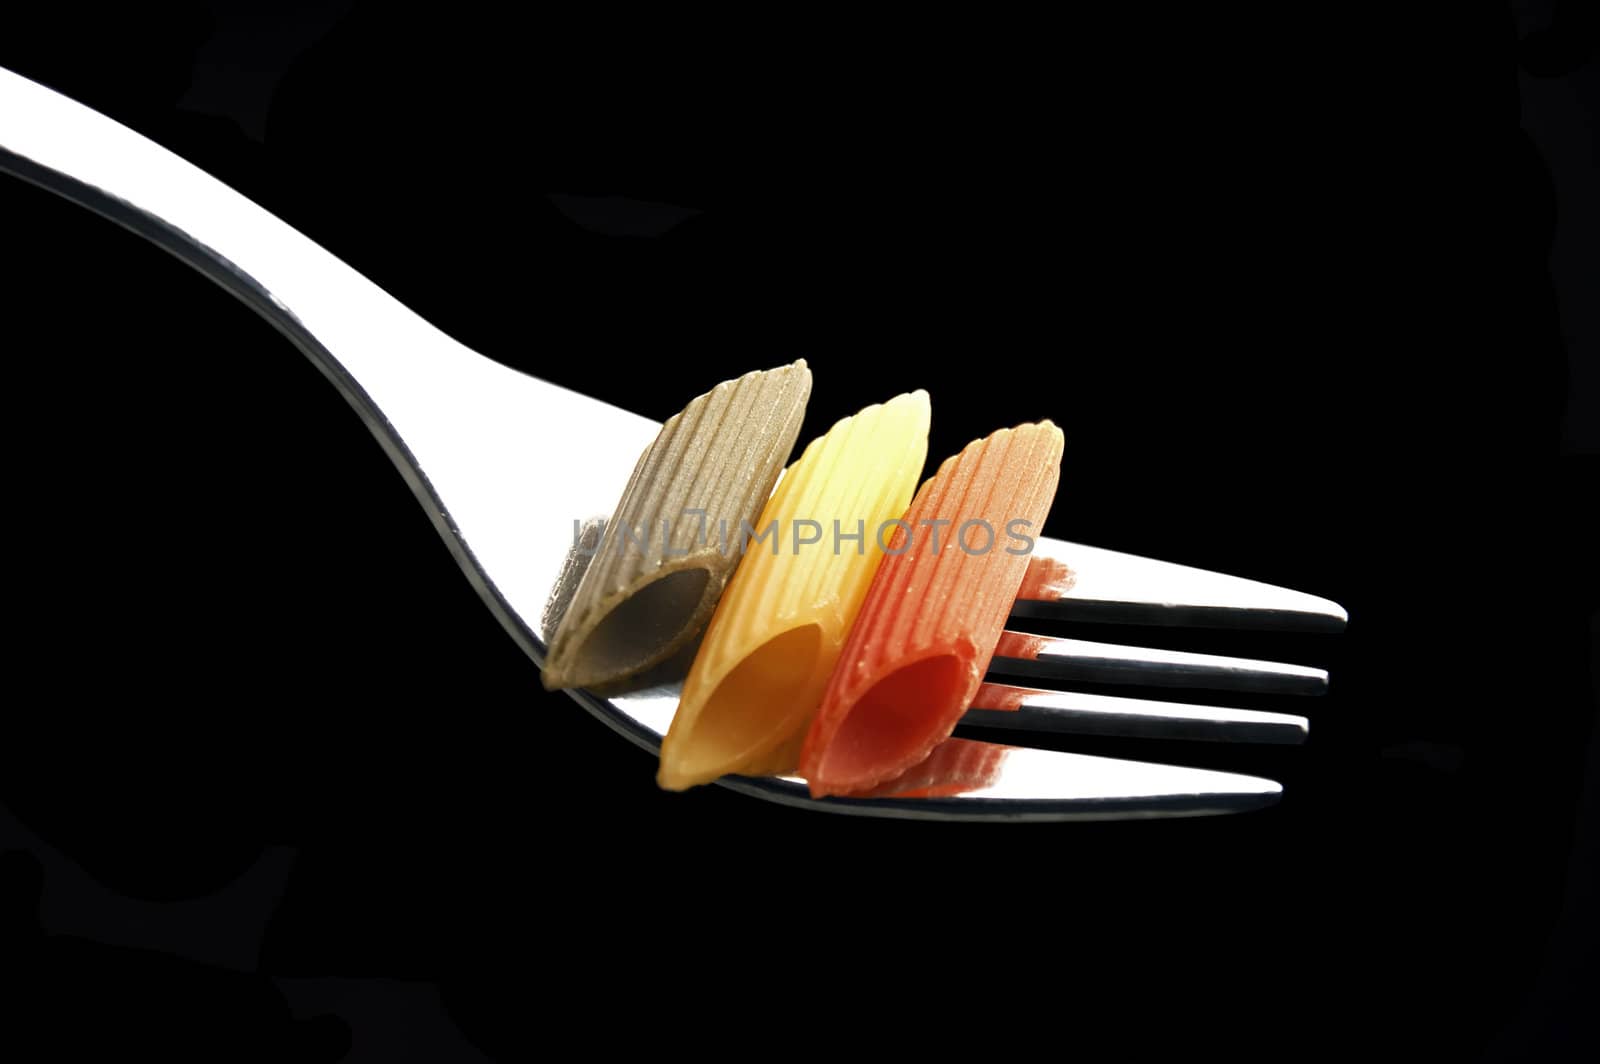 italian penne pasta on a fork by keko64